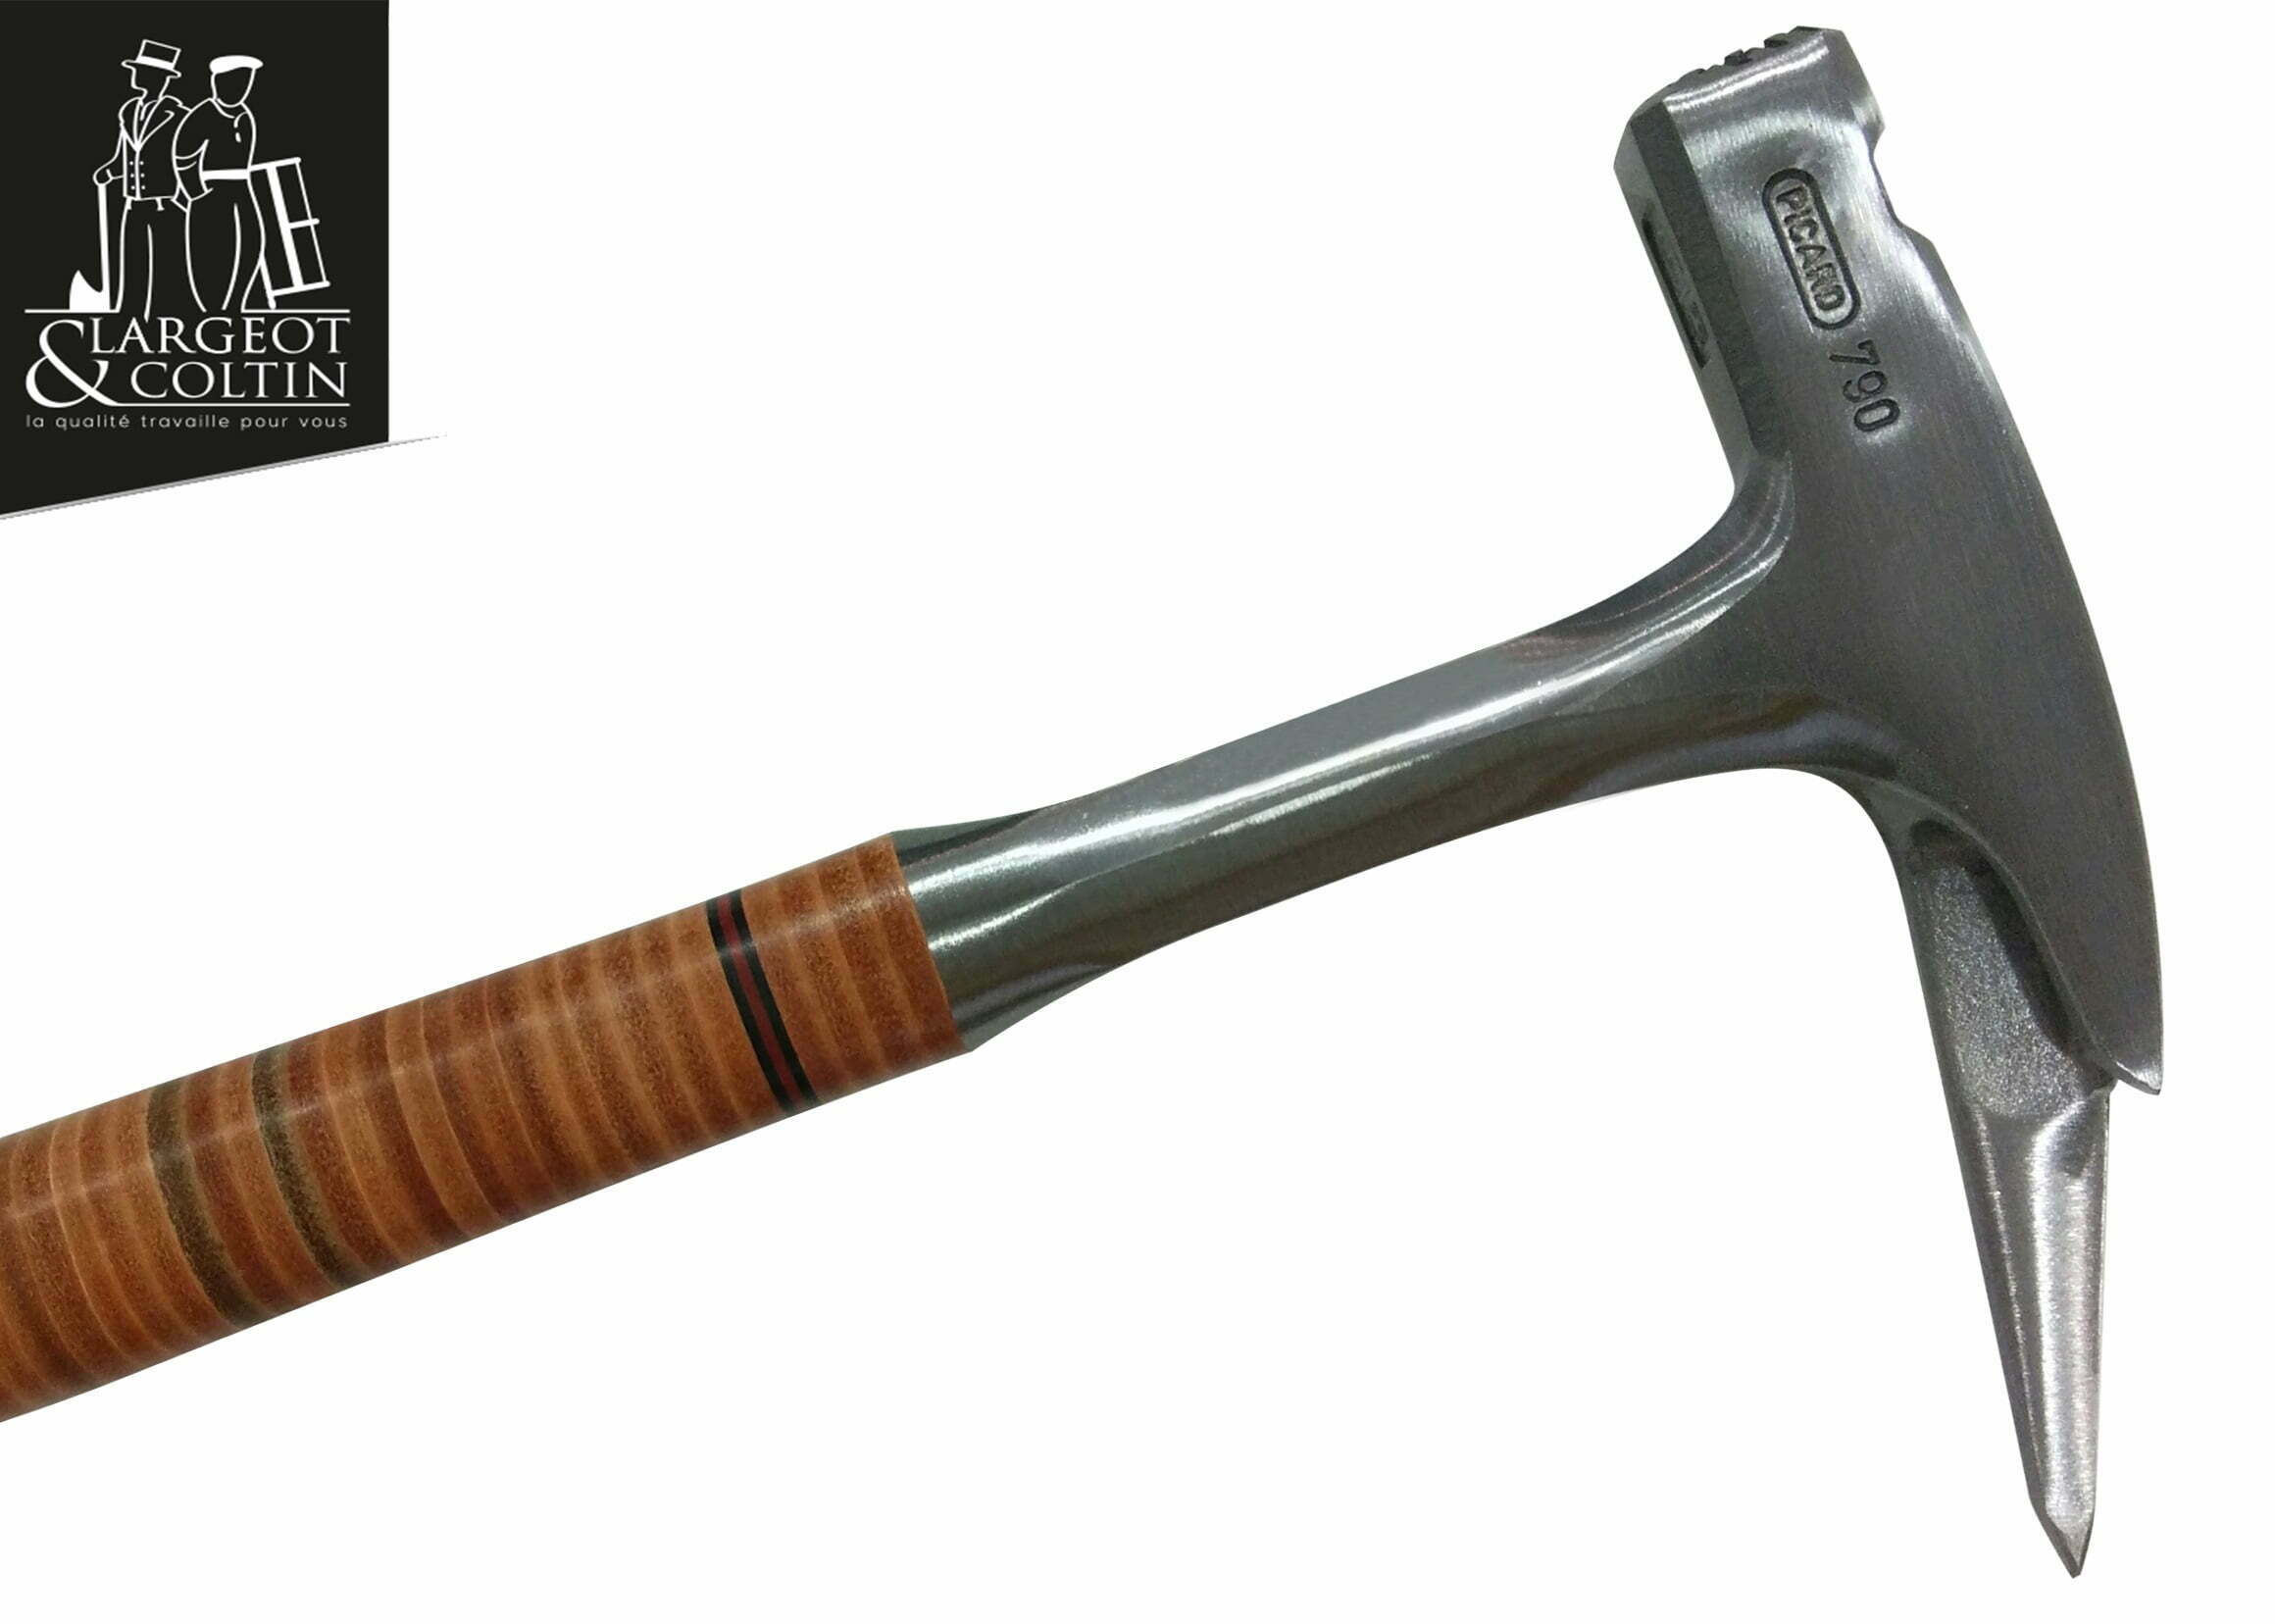 Le marteau de charpentier - Initiation Largeot et Coltin